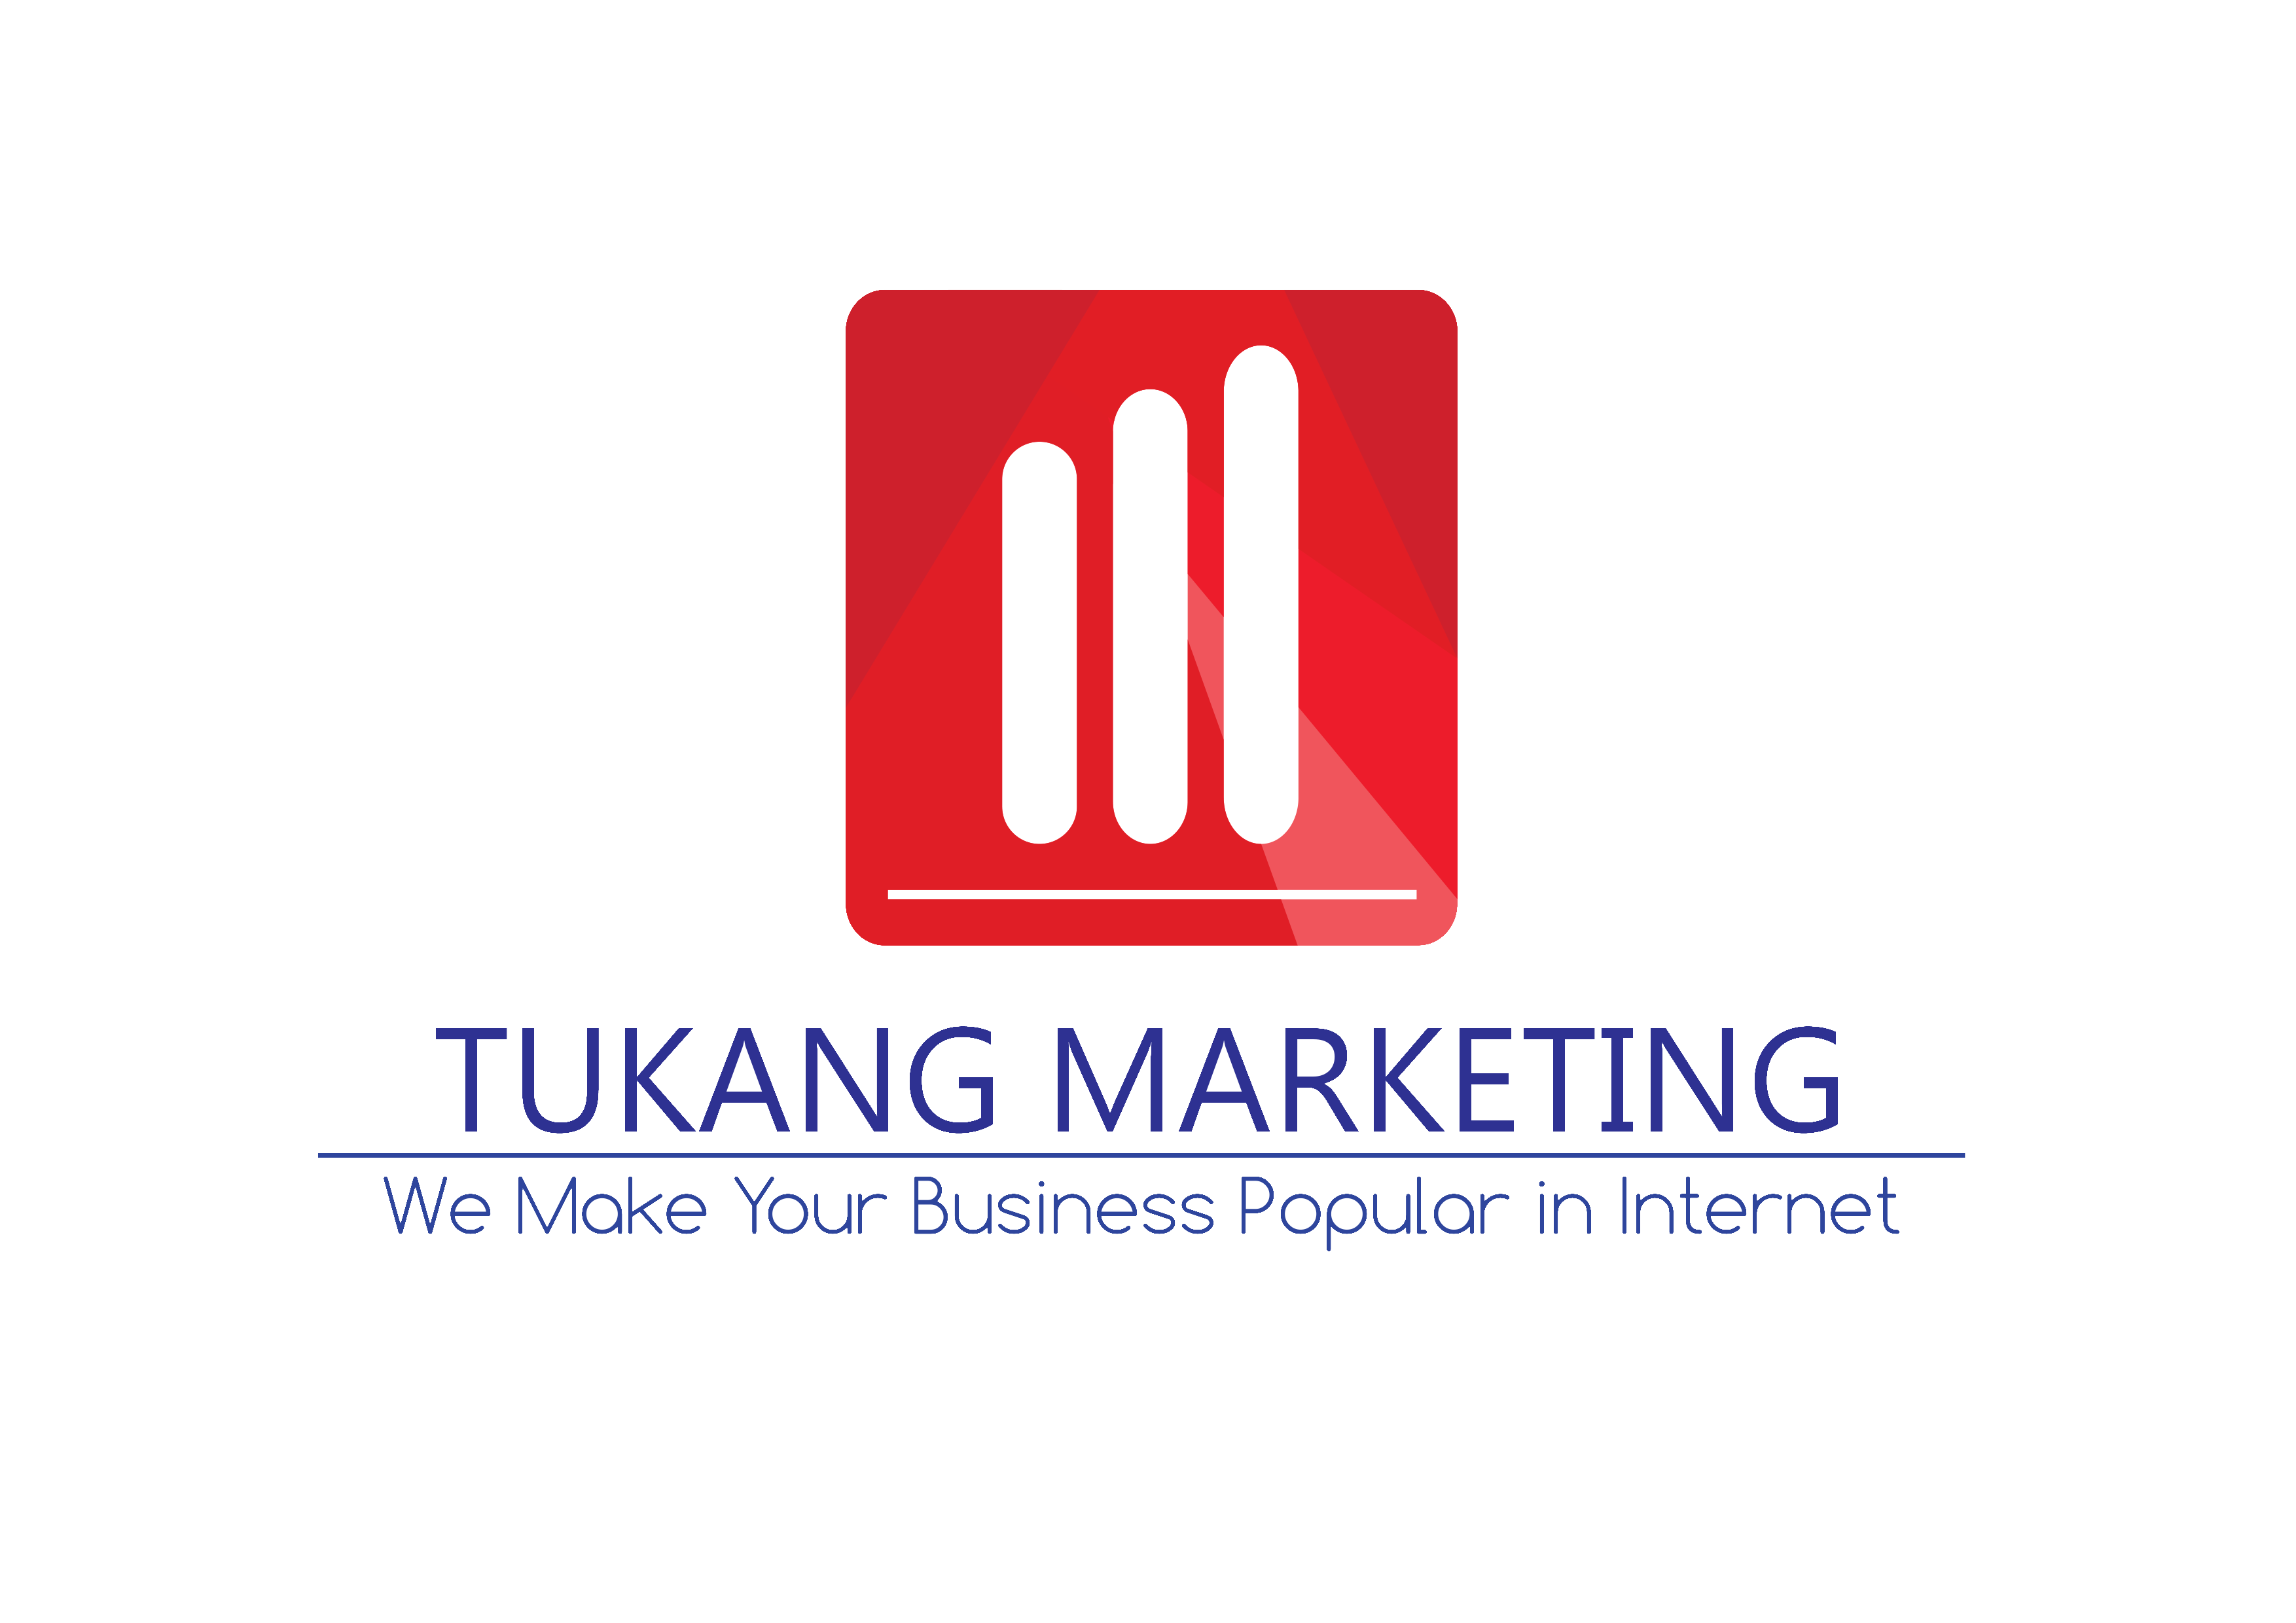 The Tukang Marketing